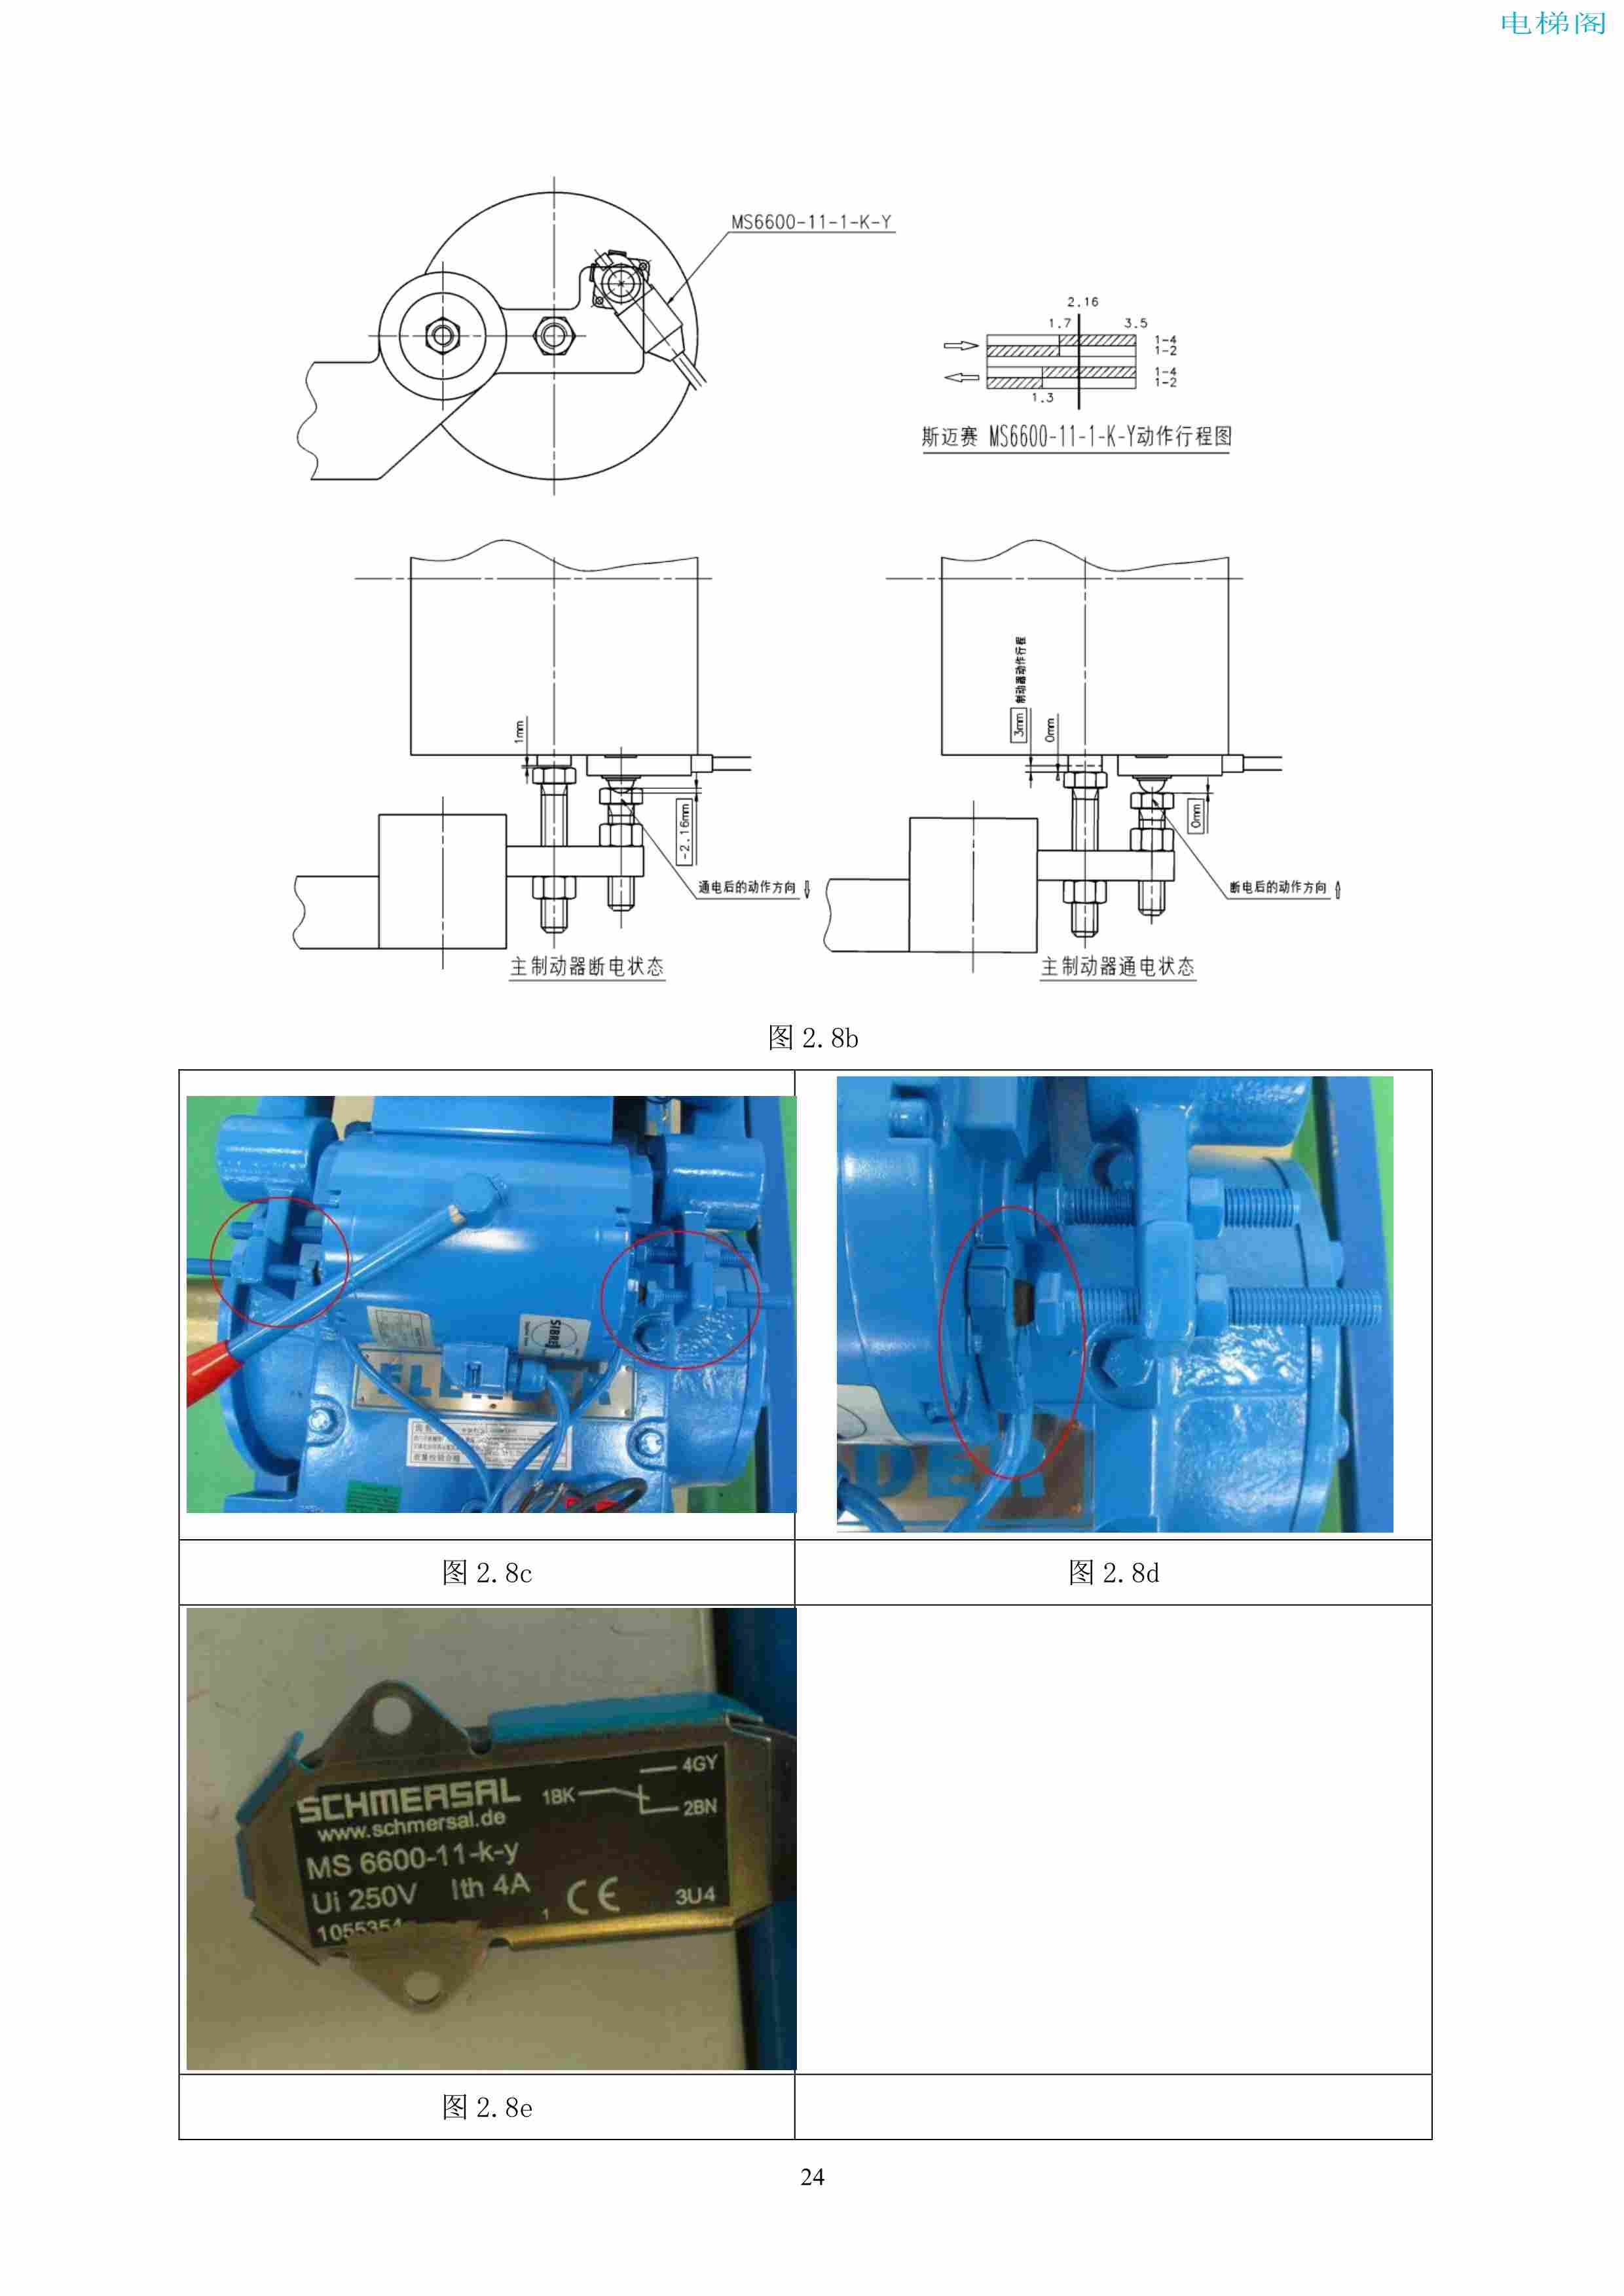 上海三菱电梯有限公司自动扶梯制动器维护作业要领汇编_25.jpg